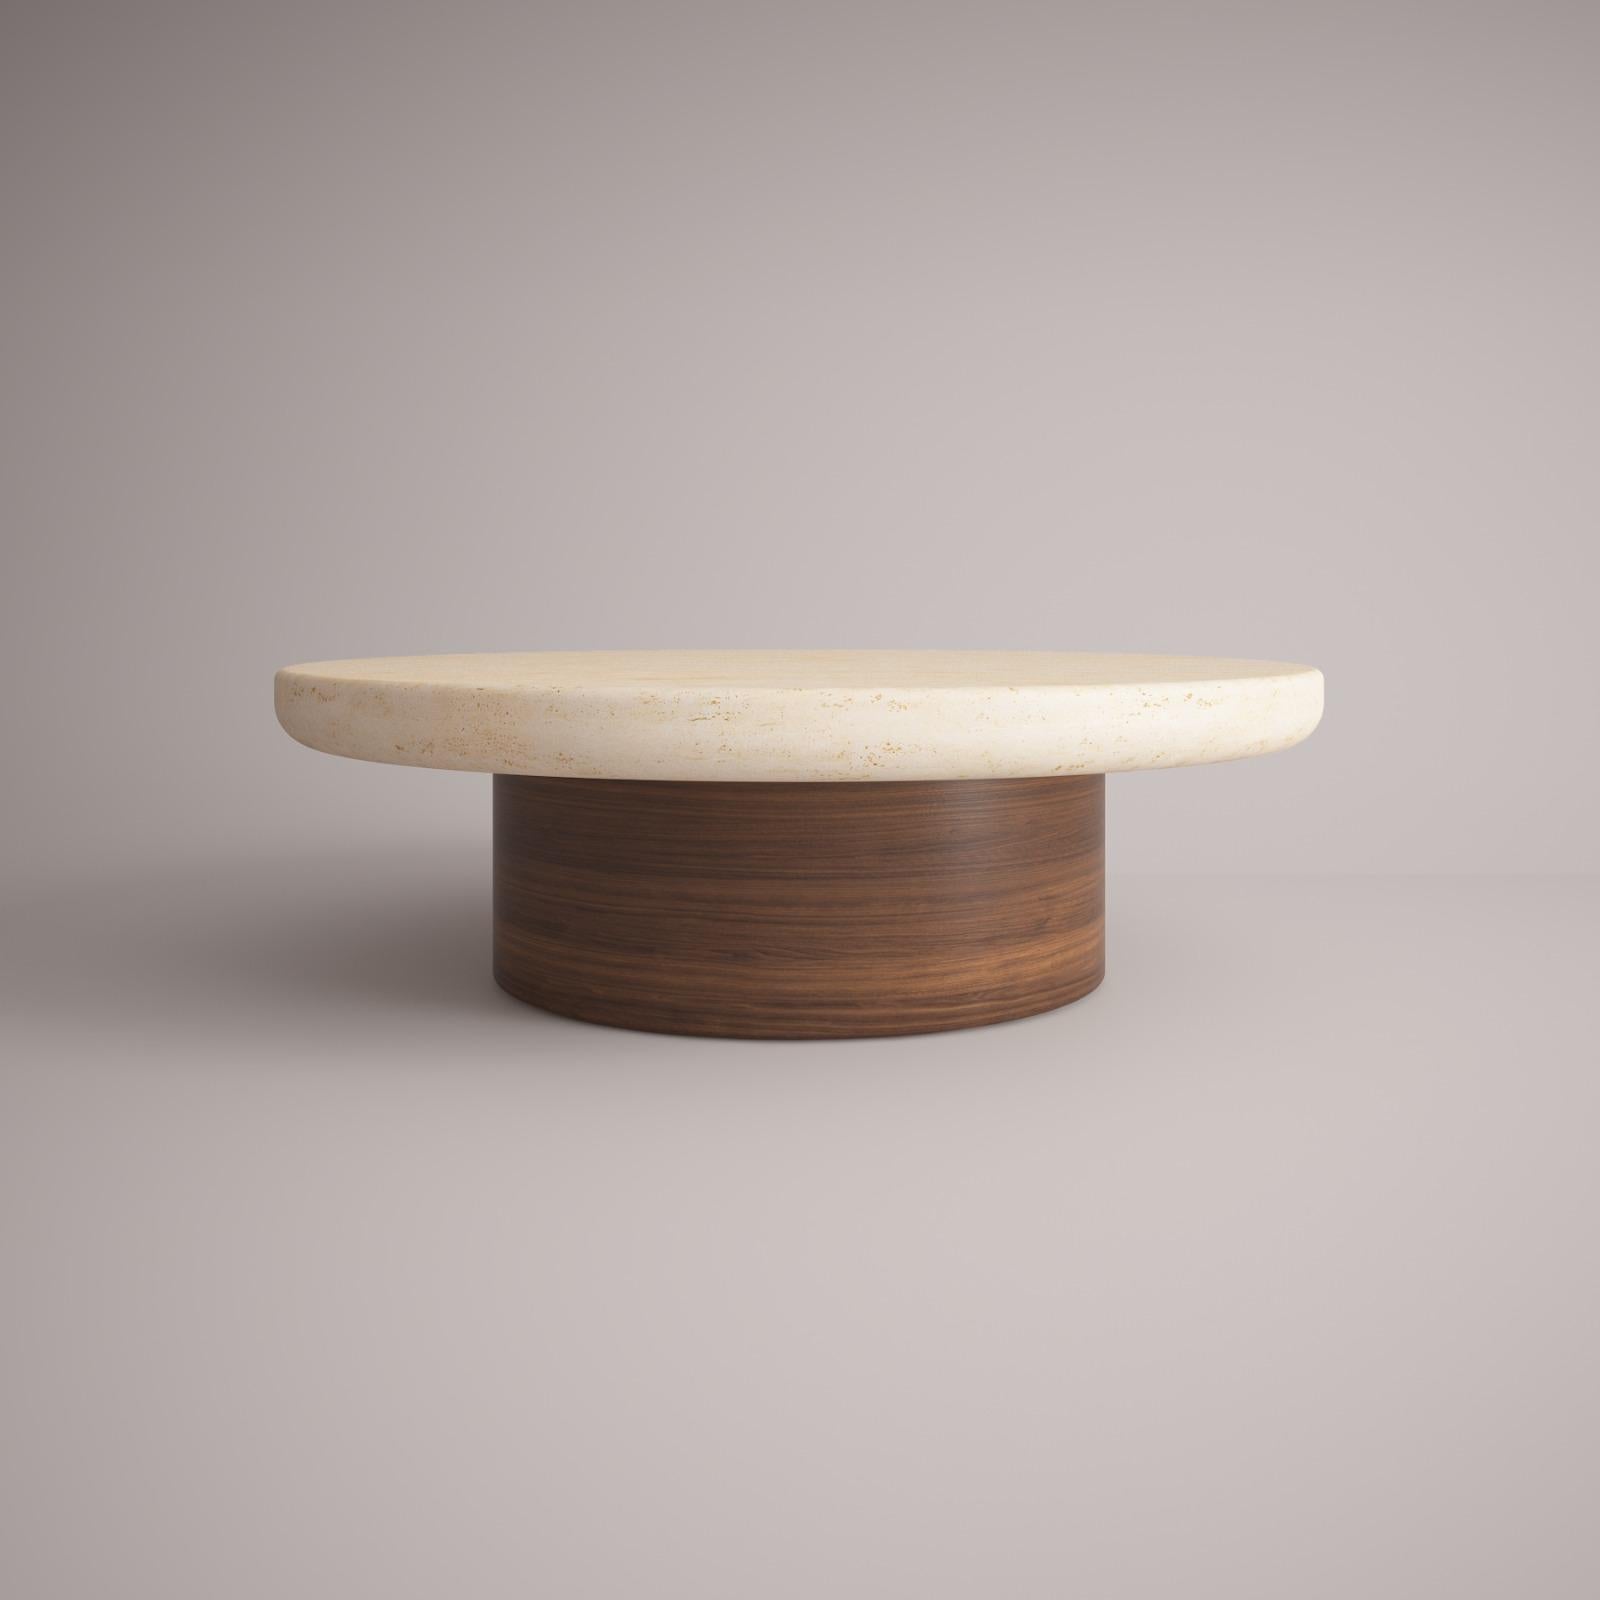 Lessa - Table centrale européenne du 21e siècle Conçu par Studio Rig Travertino Wood

La marque Collector est née au Portugal et a pour objectif de faire partie de la vie quotidienne en associant les meubles aux routines et aux styles de vie